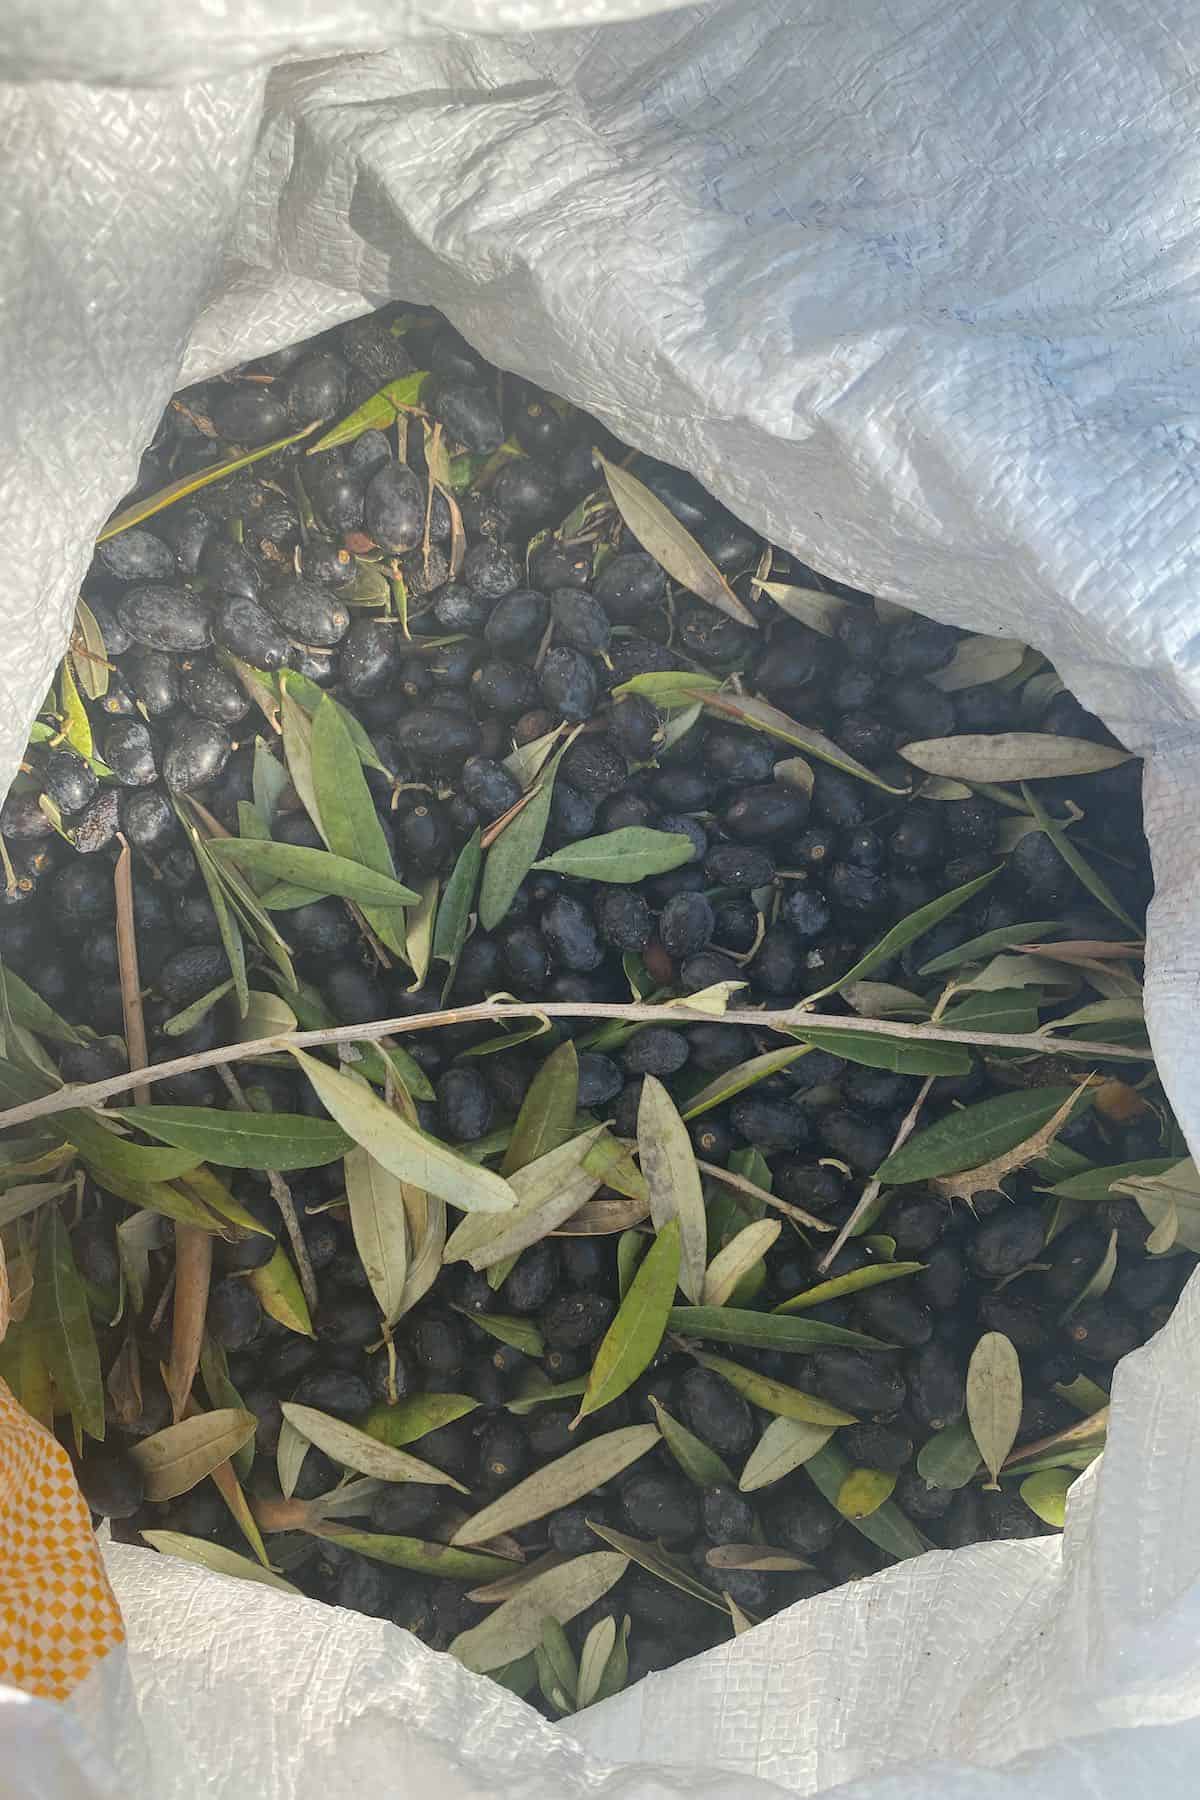 Black olives in a bag